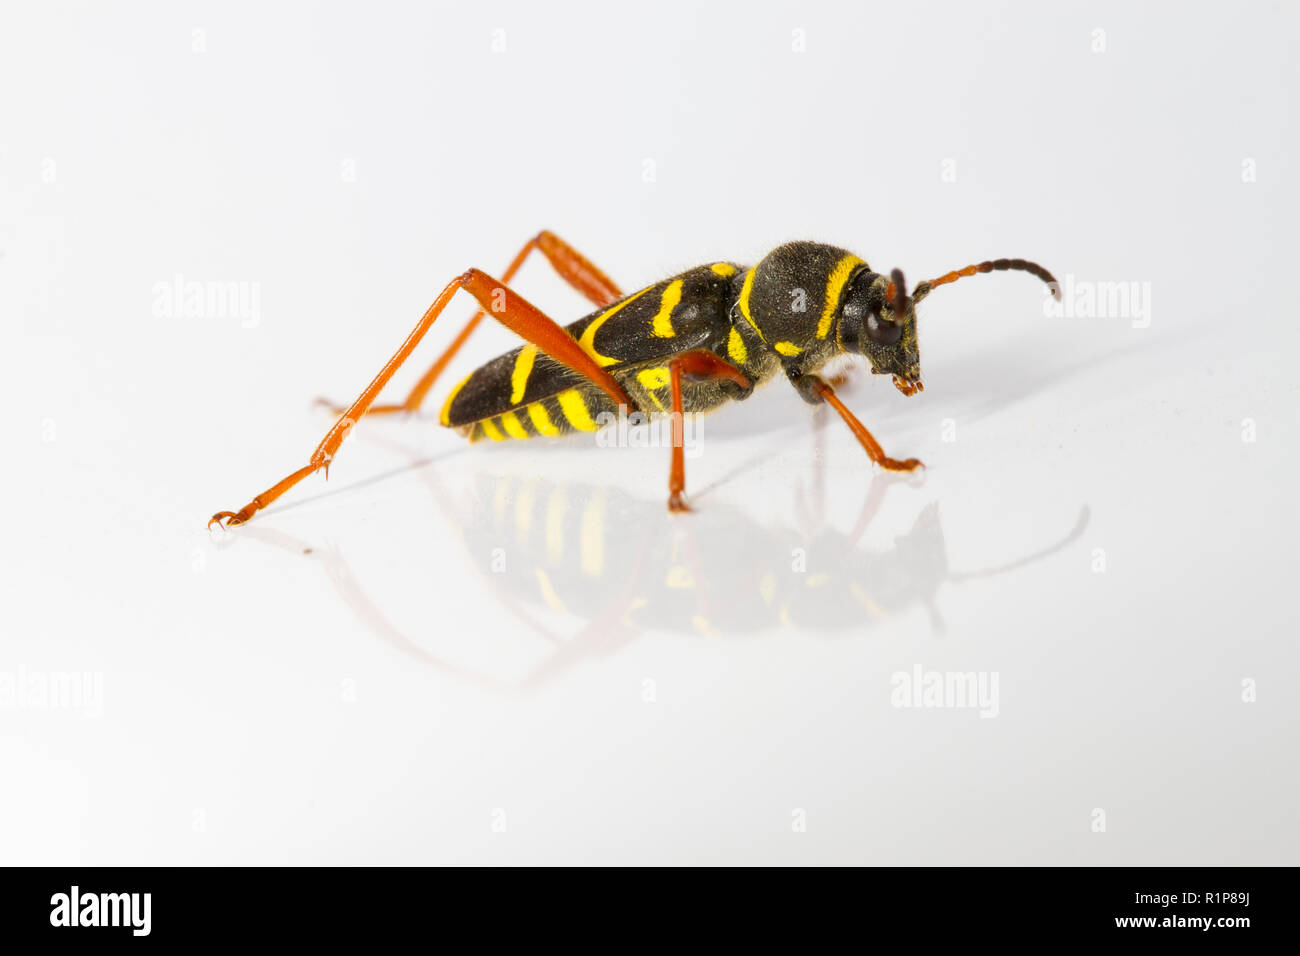 Wasp beetle (Clytus arietis) adulte, insecte photographié sur un fond blanc. Powys, Pays de Galles. De juin. Banque D'Images